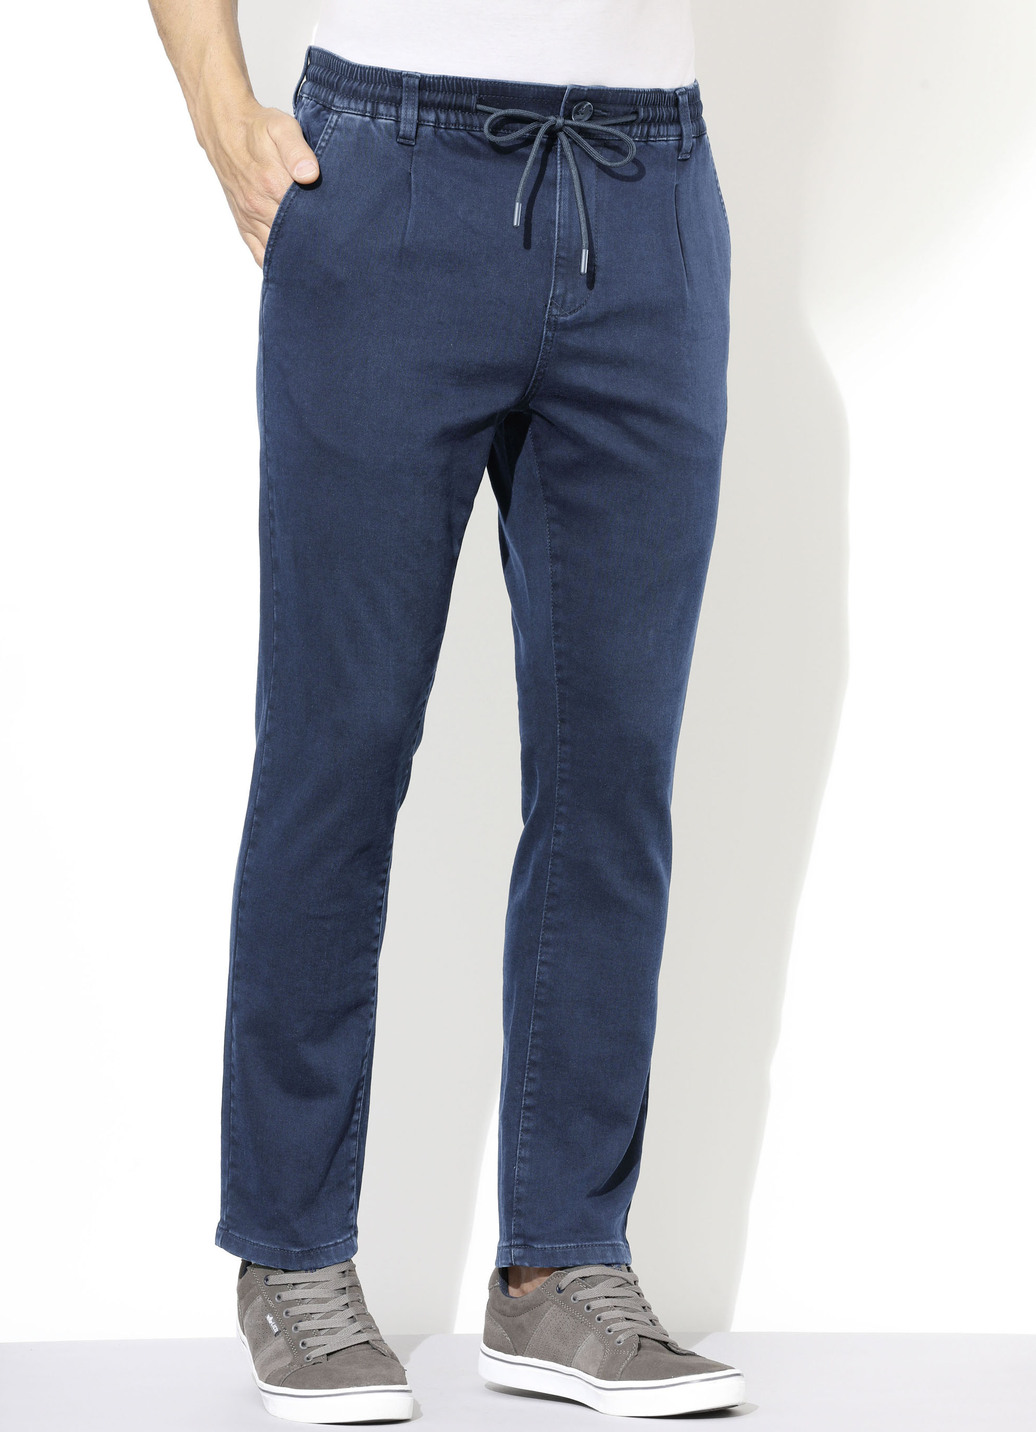 Superstretch-Jeans in 3 Farben, Jeansblau, Größe 28 von DANNECKER